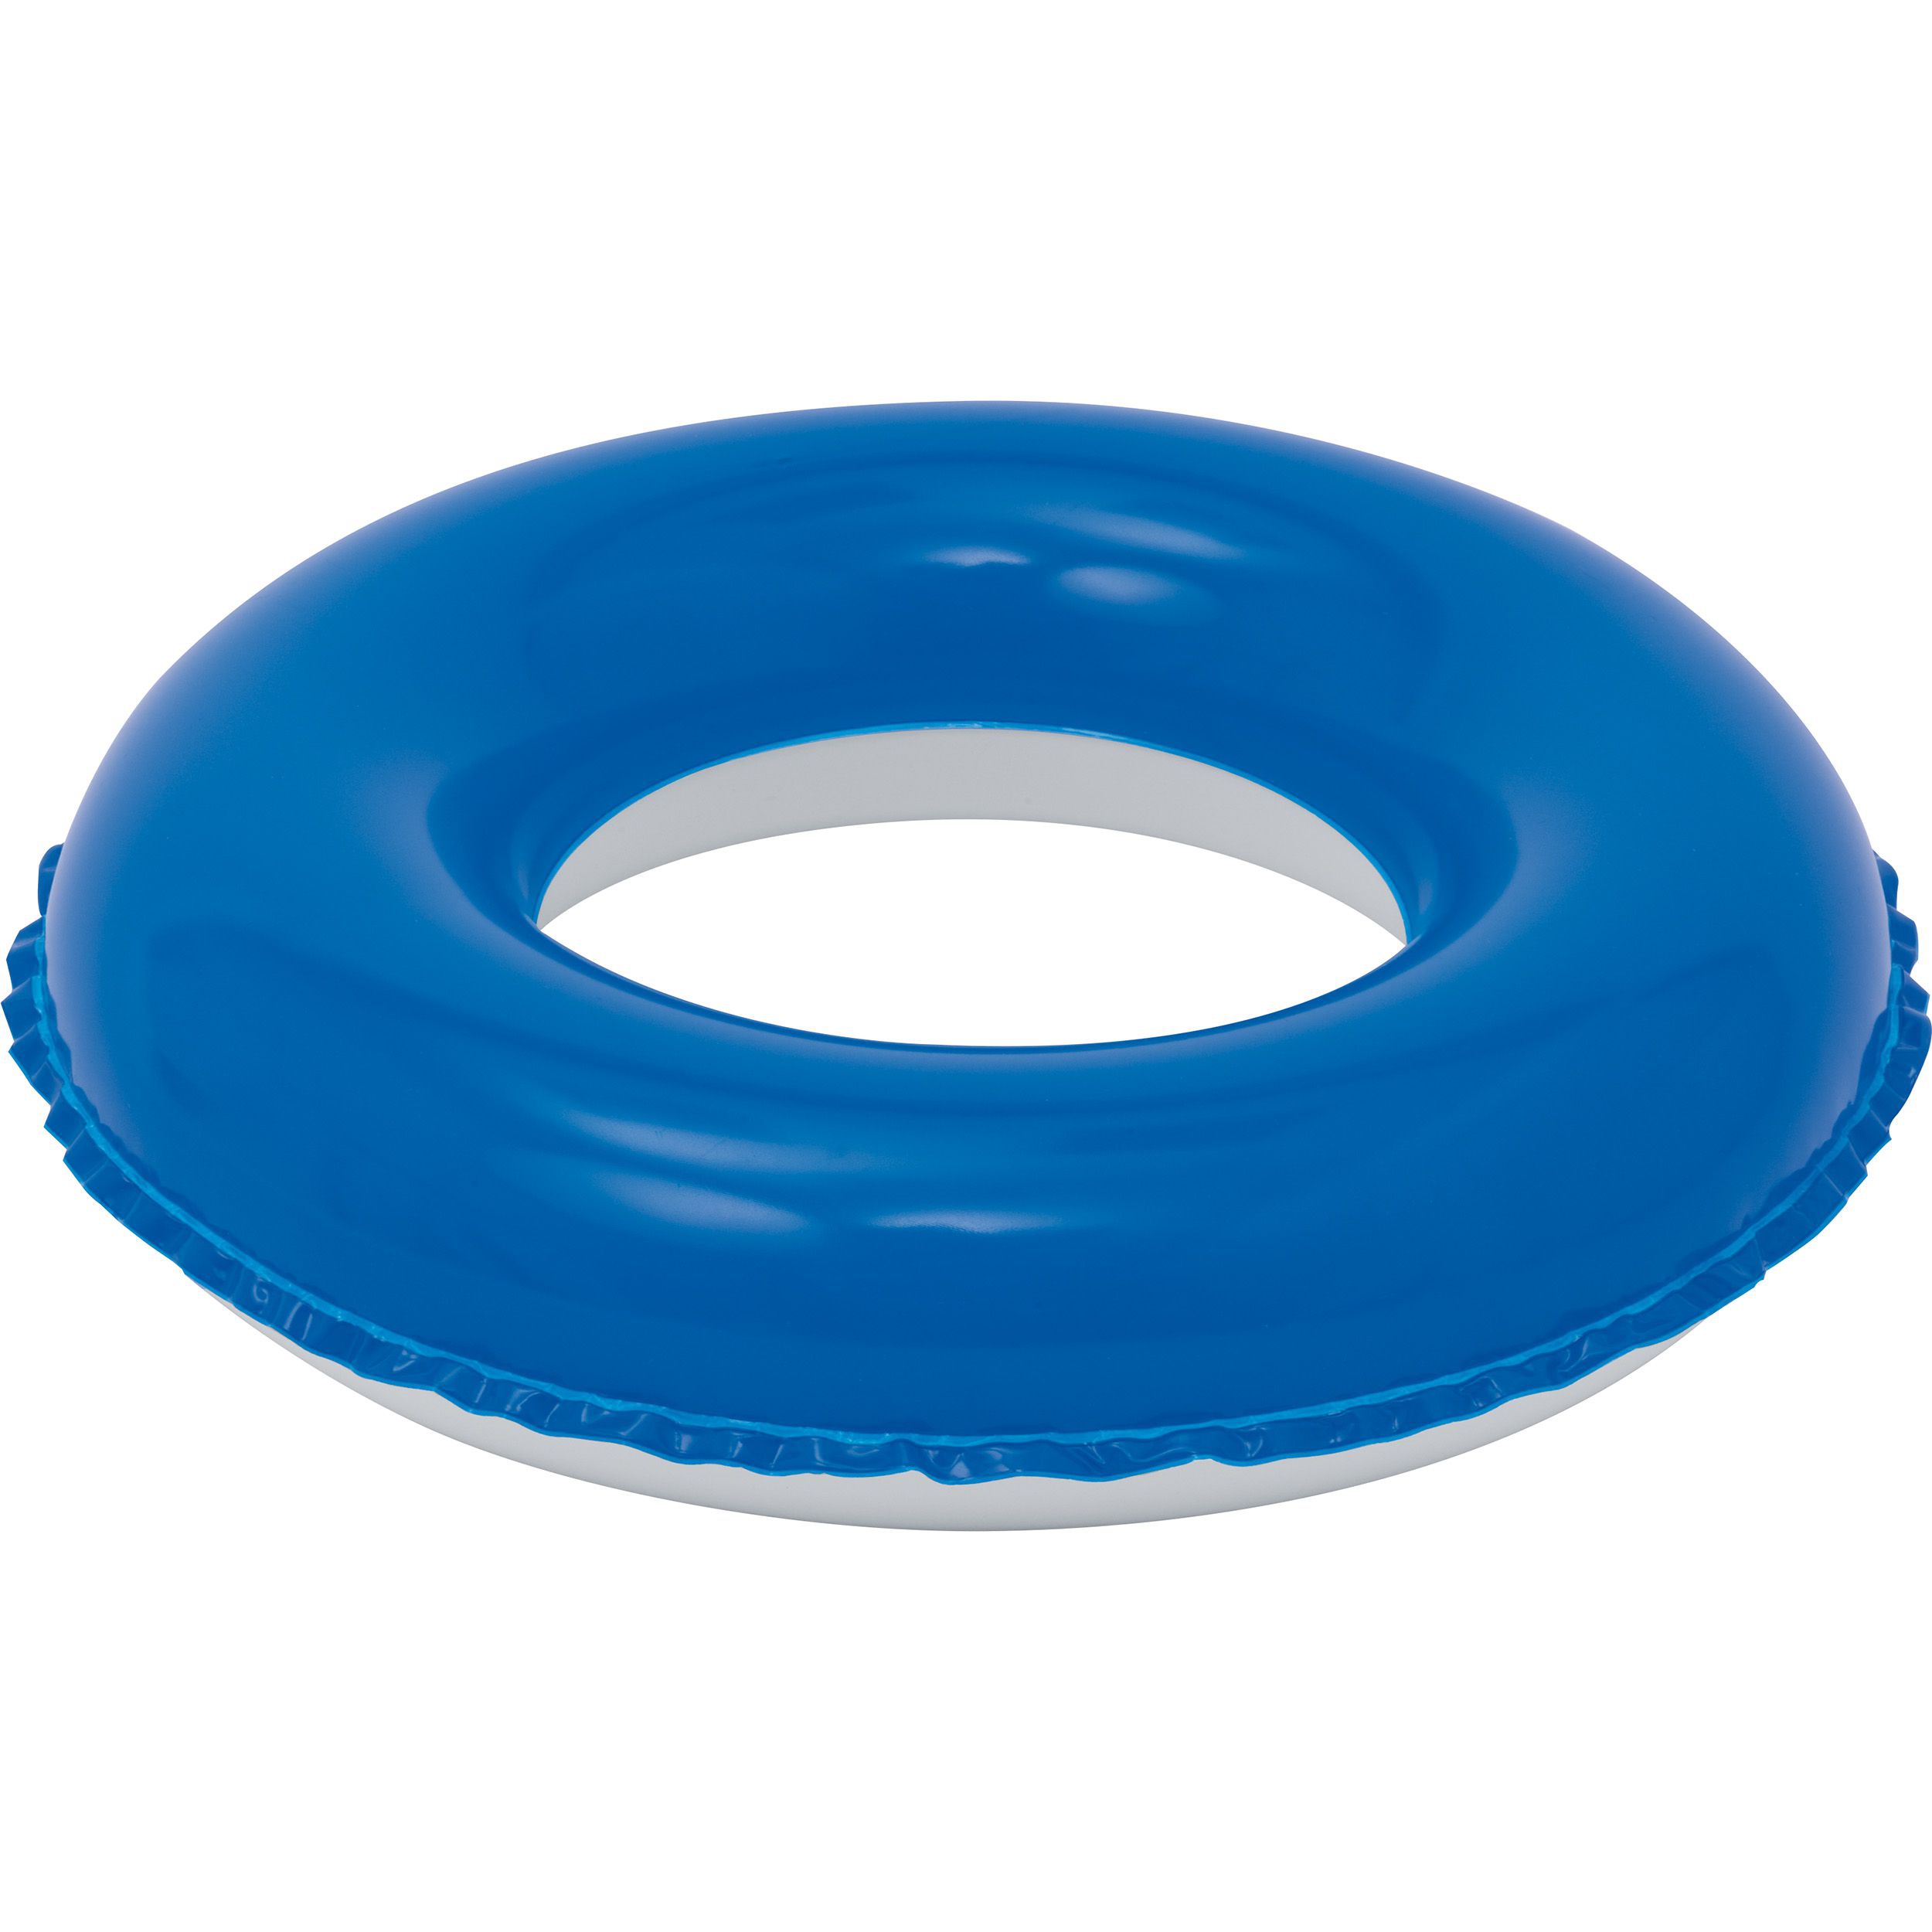 2 Farbiger Reifen zum Aufblasen aus phthalatfreiem PVC, blau